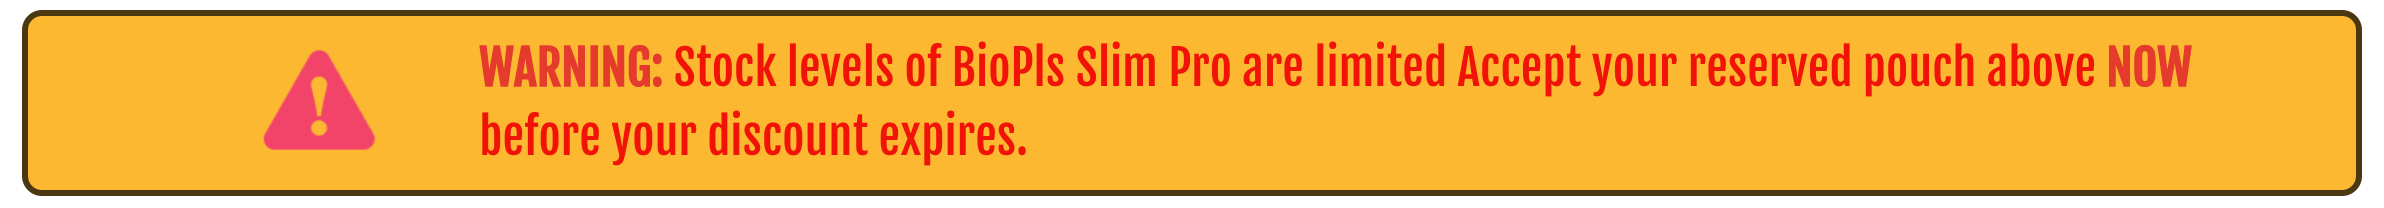 BioPls Slim Pro - WARNING